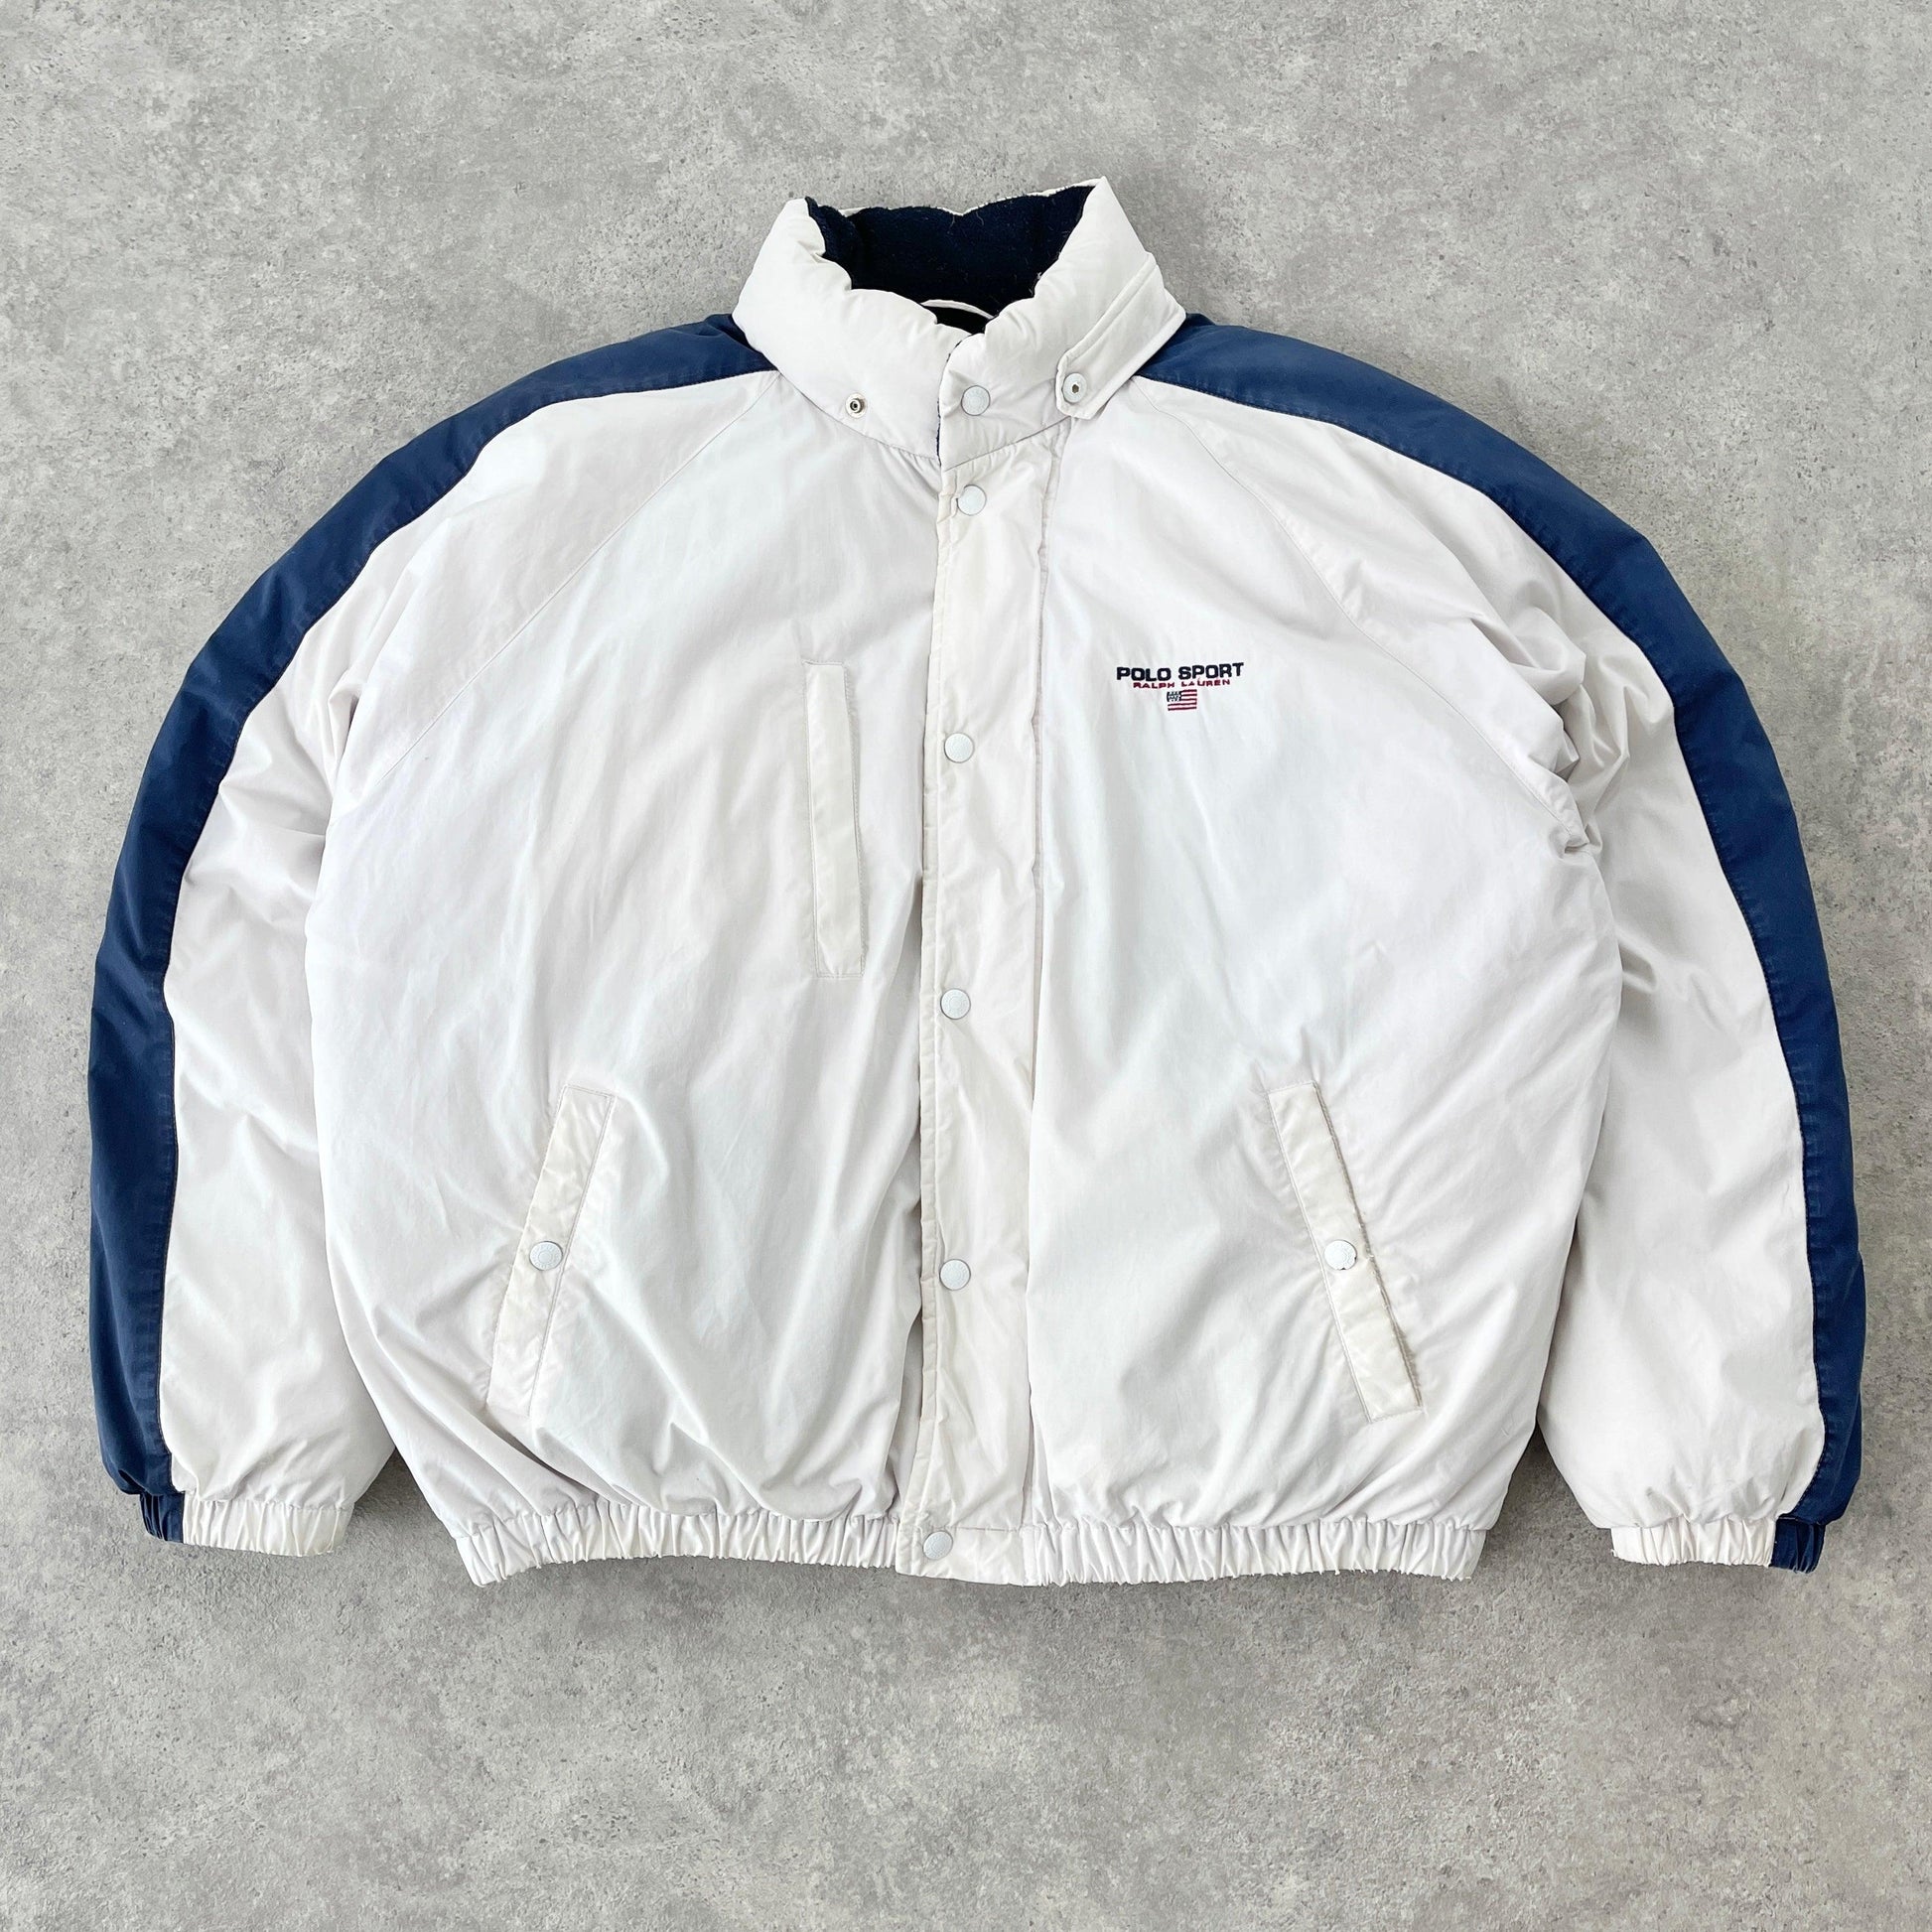 Polo Sport Ralph Lauren 1990s down fill heavyweight puffer jacket (XL) - Known Source